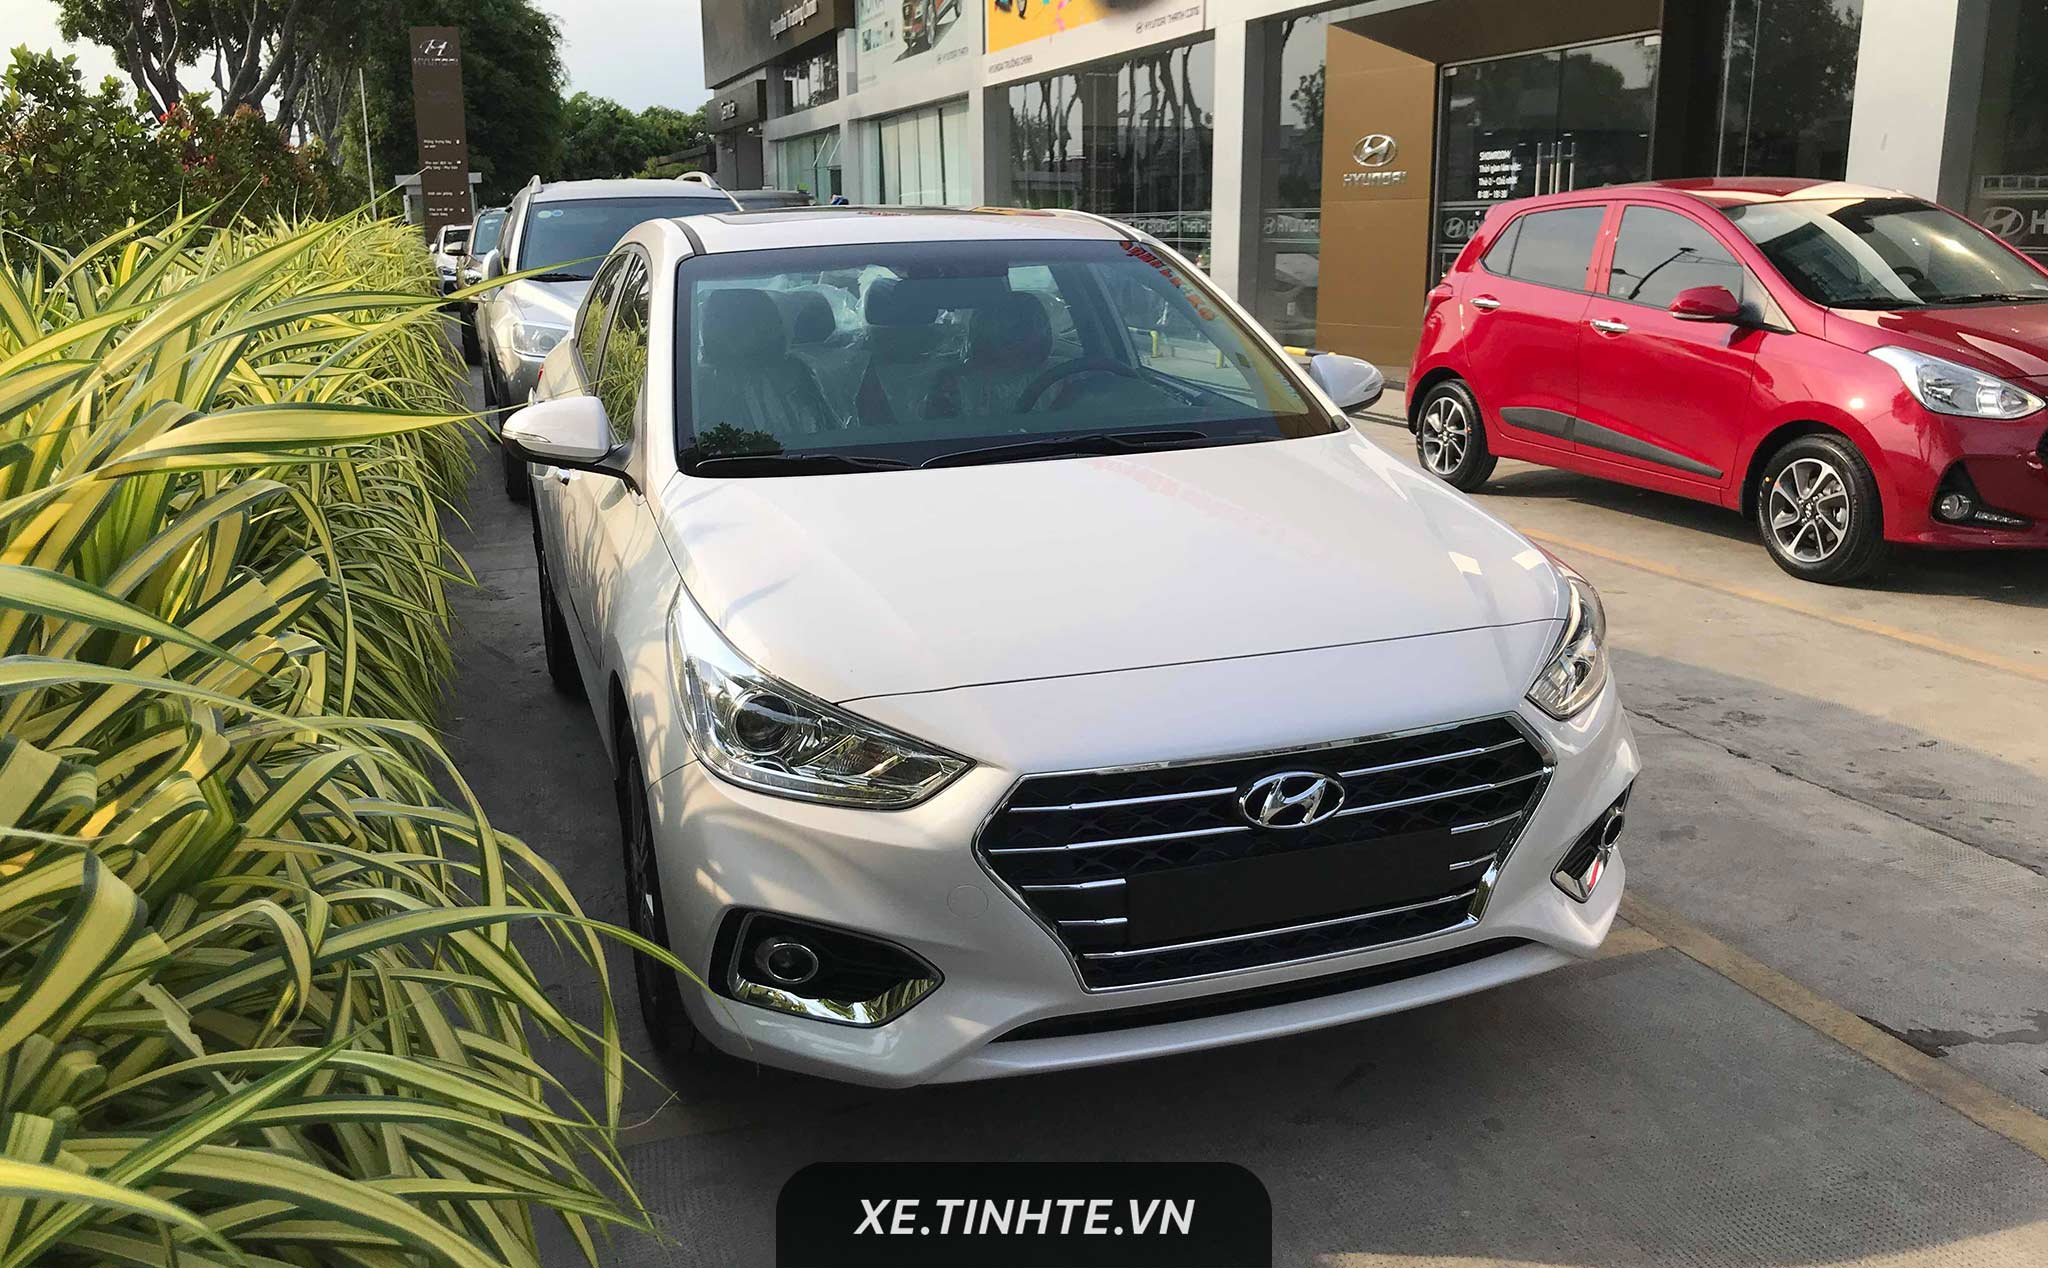 Hyundai Accent 2019 sắp ra mắt thêm 2 trang bị mới giá tăng nhẹ